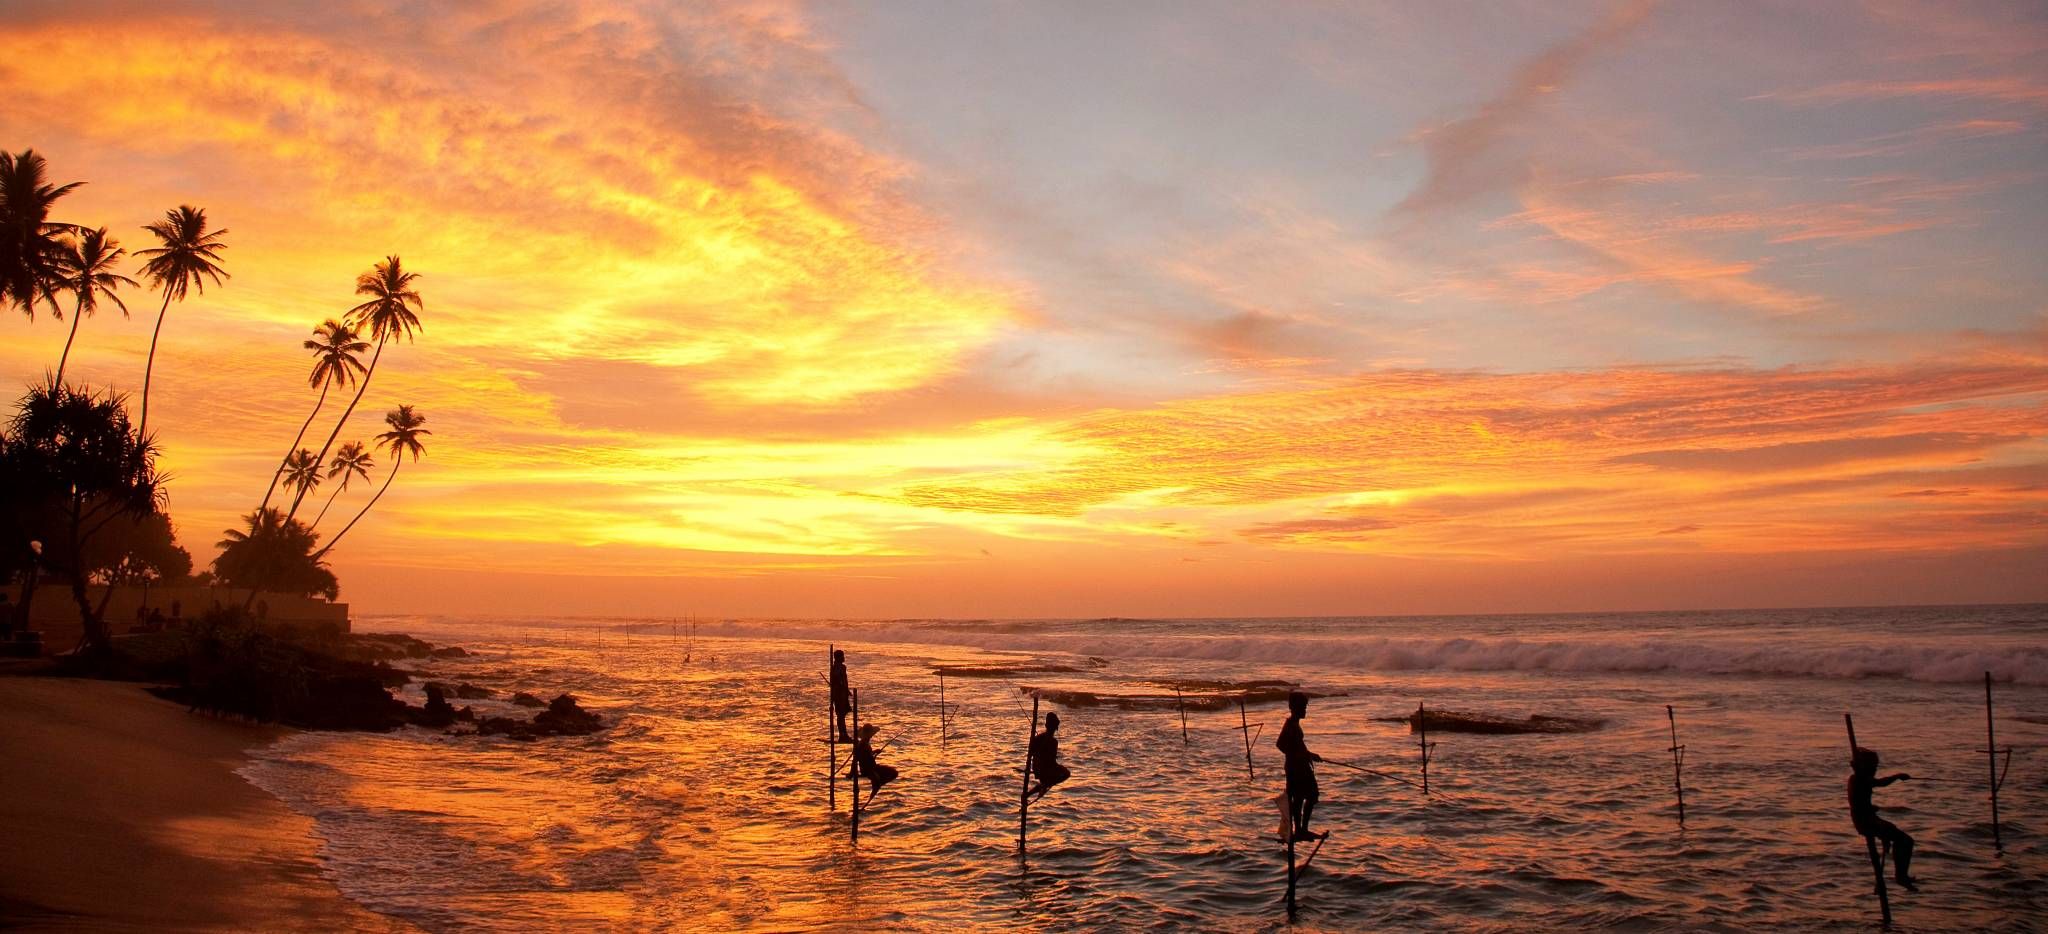 Manner fischen auf Stelzen im Wasser an einem Strand auf Sri Lanka, im Abendrot